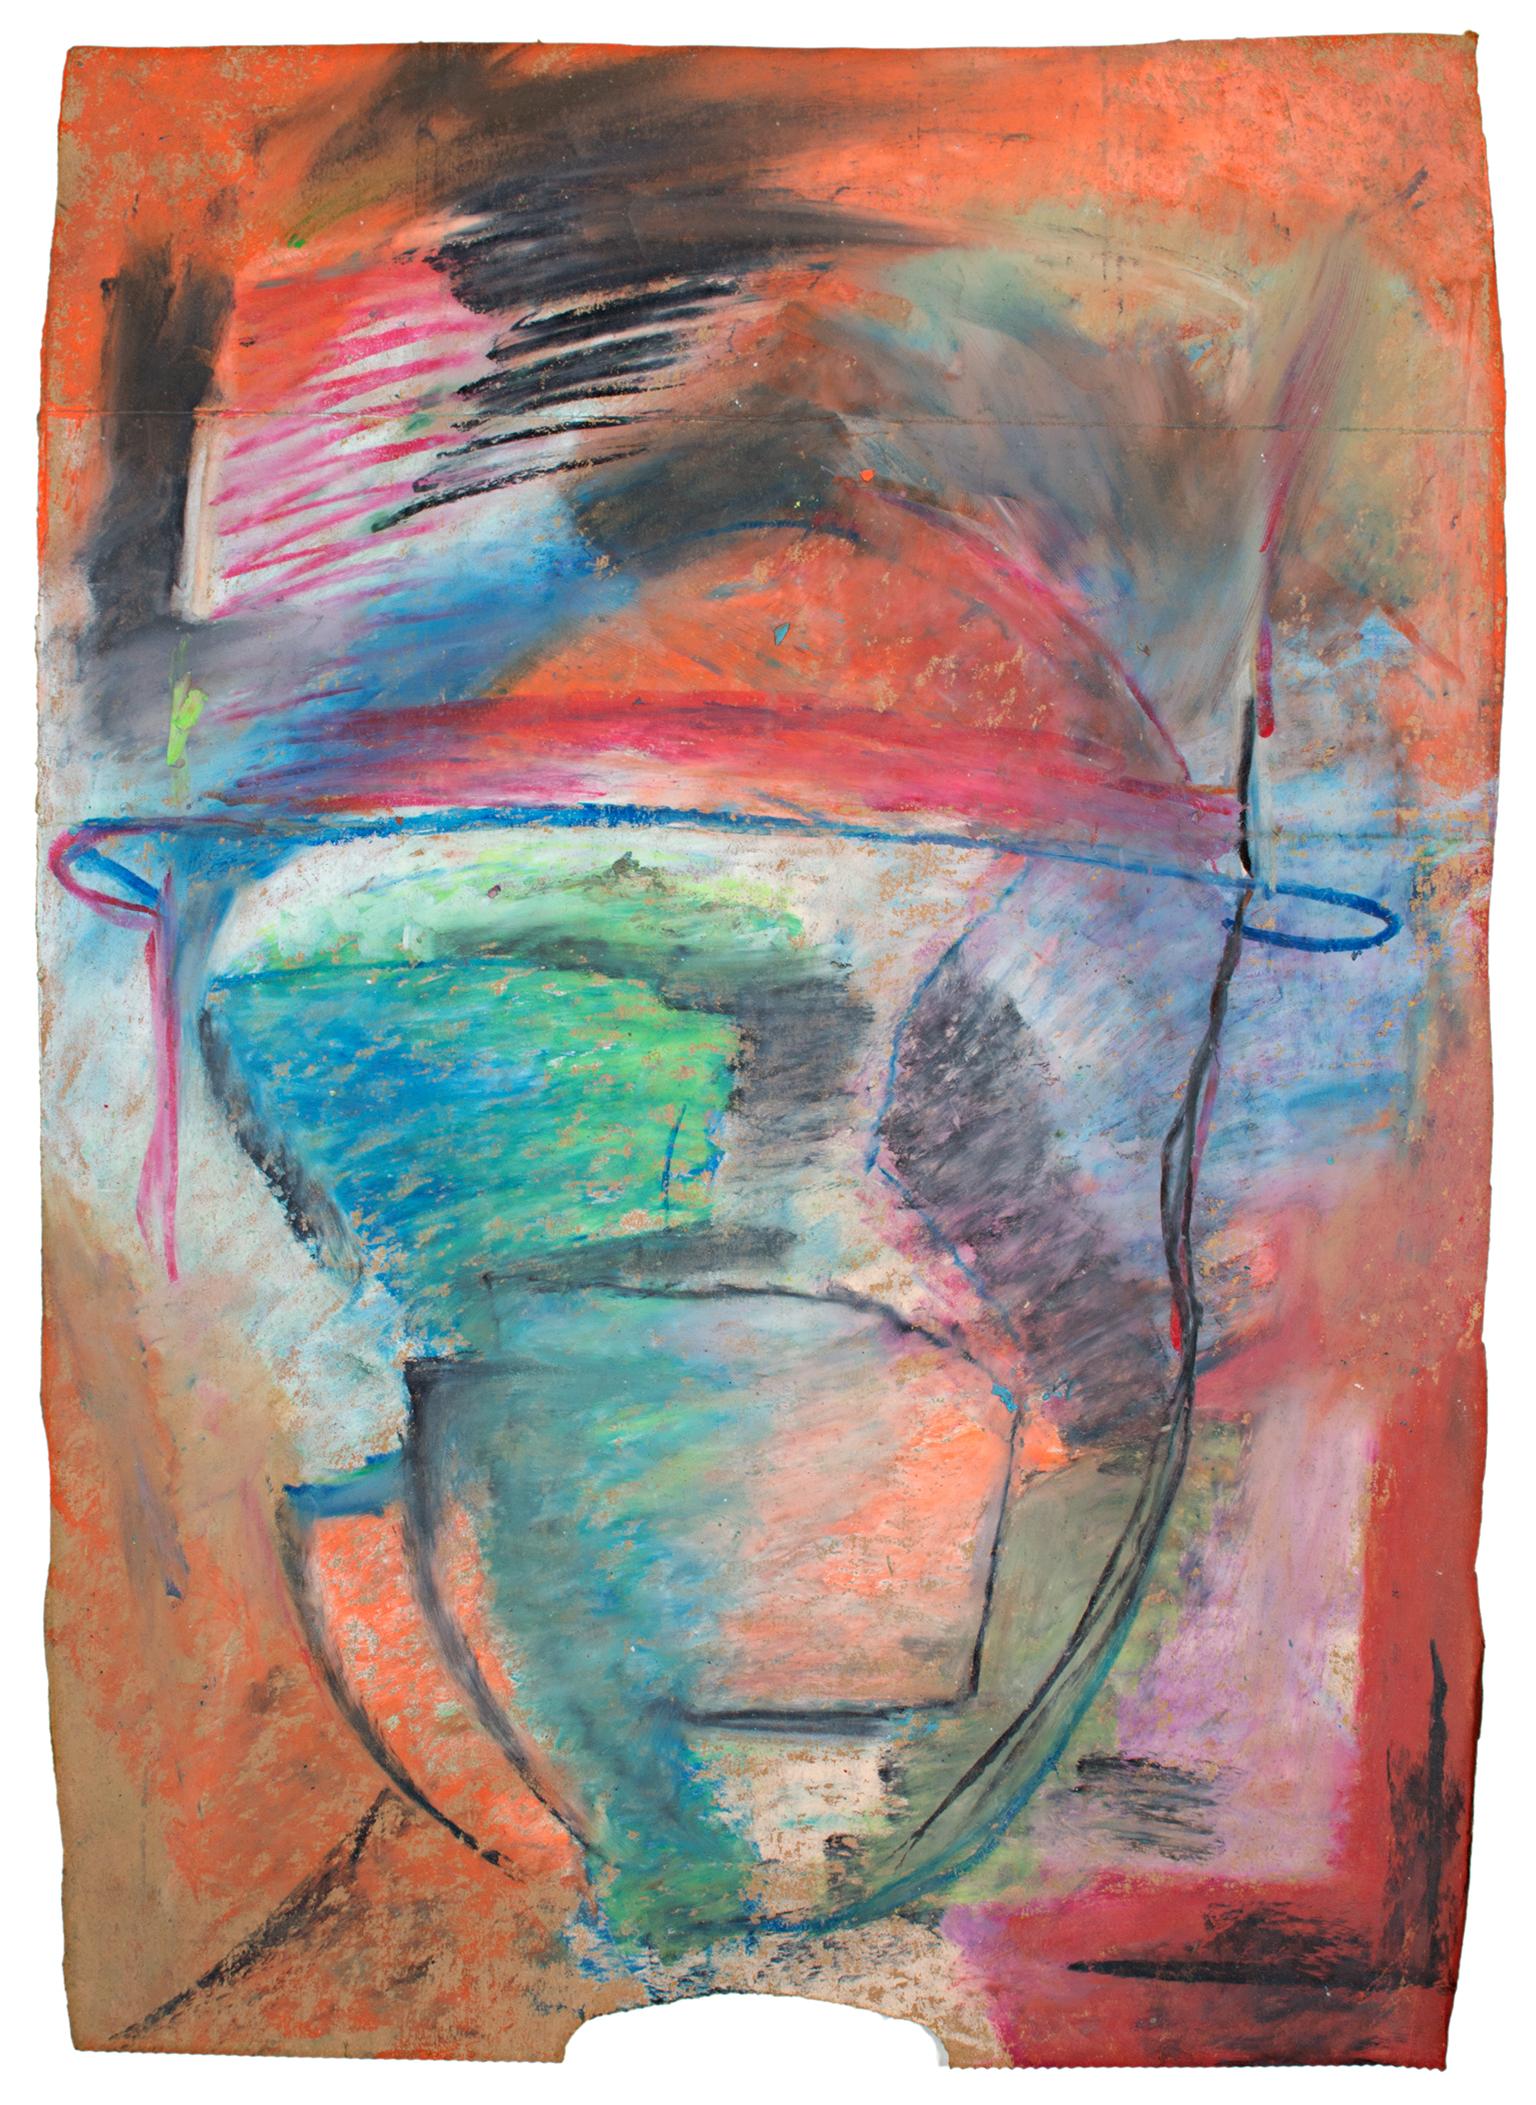 "Liek" ist eine Original-Ölpastellzeichnung auf einer Papiertüte von Reginald K. Gee. Der Künstler hat das Werk auf der Rückseite signiert. Es zeigt abstrakte Farbfelder und gestische Zeichen, über die die Andeutung eines Gesichts und eines Hutes